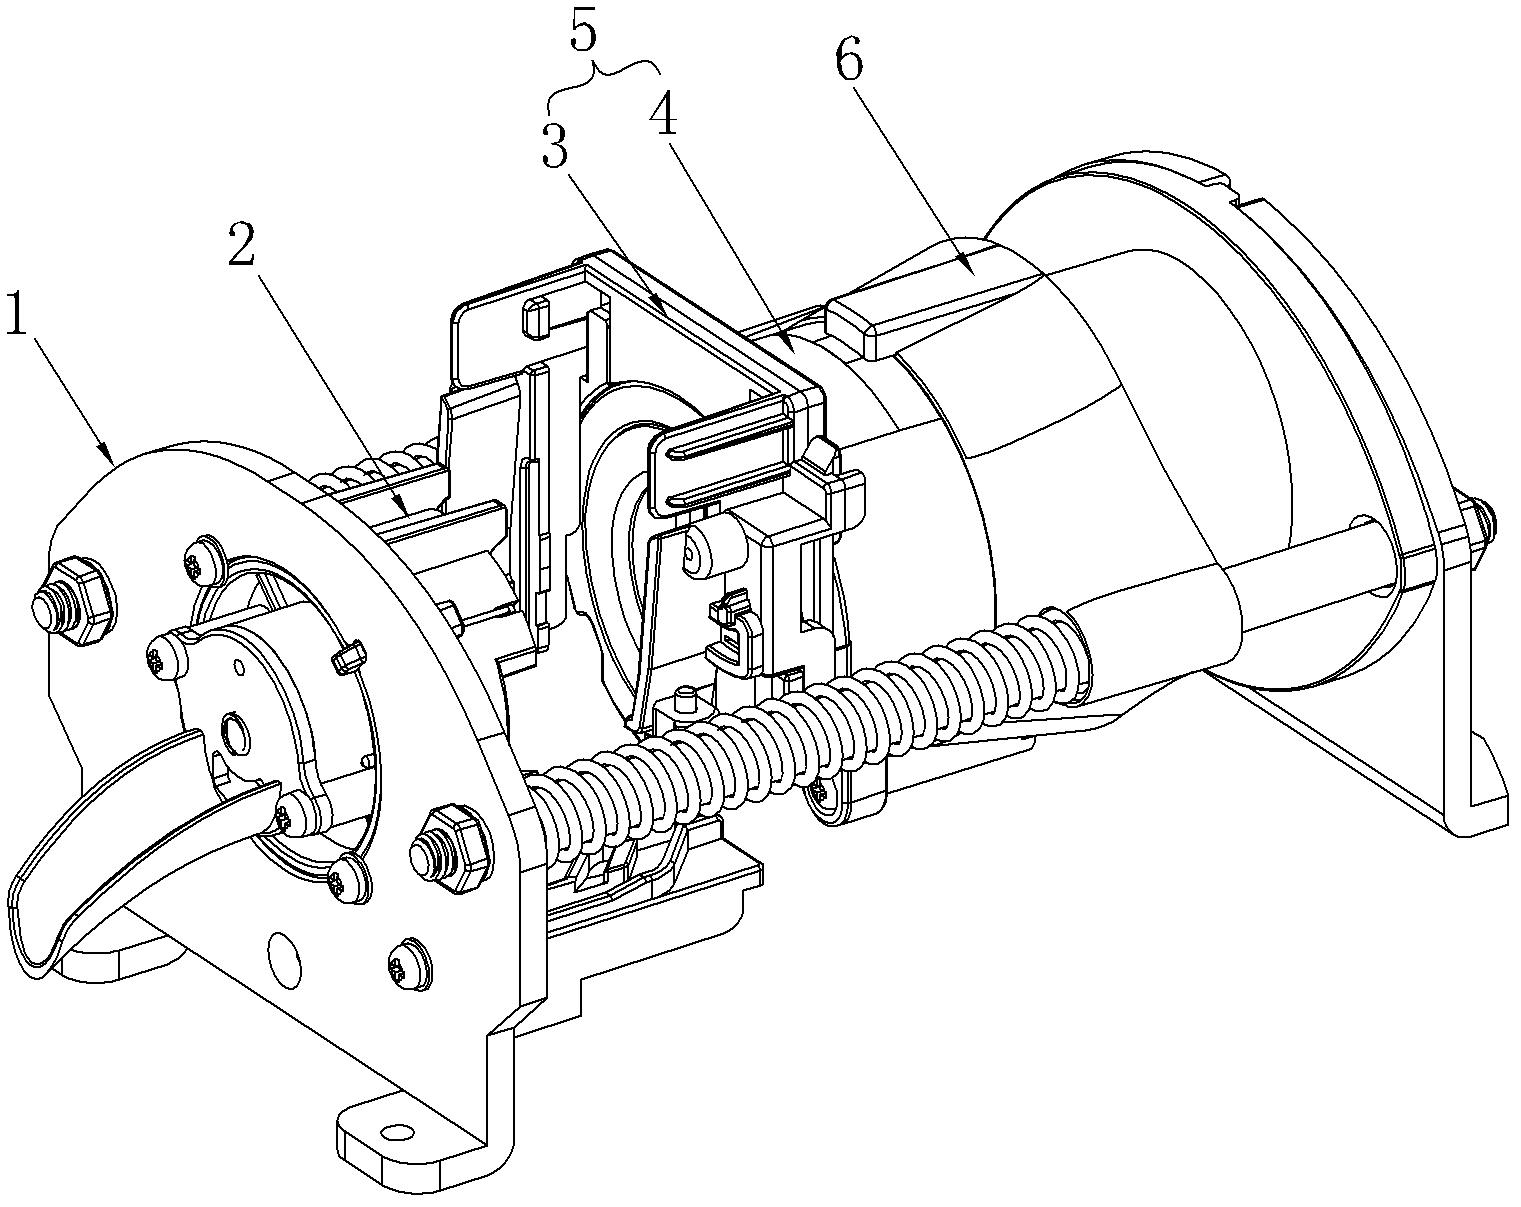 Separation blade mechanism of capsule coffee maker